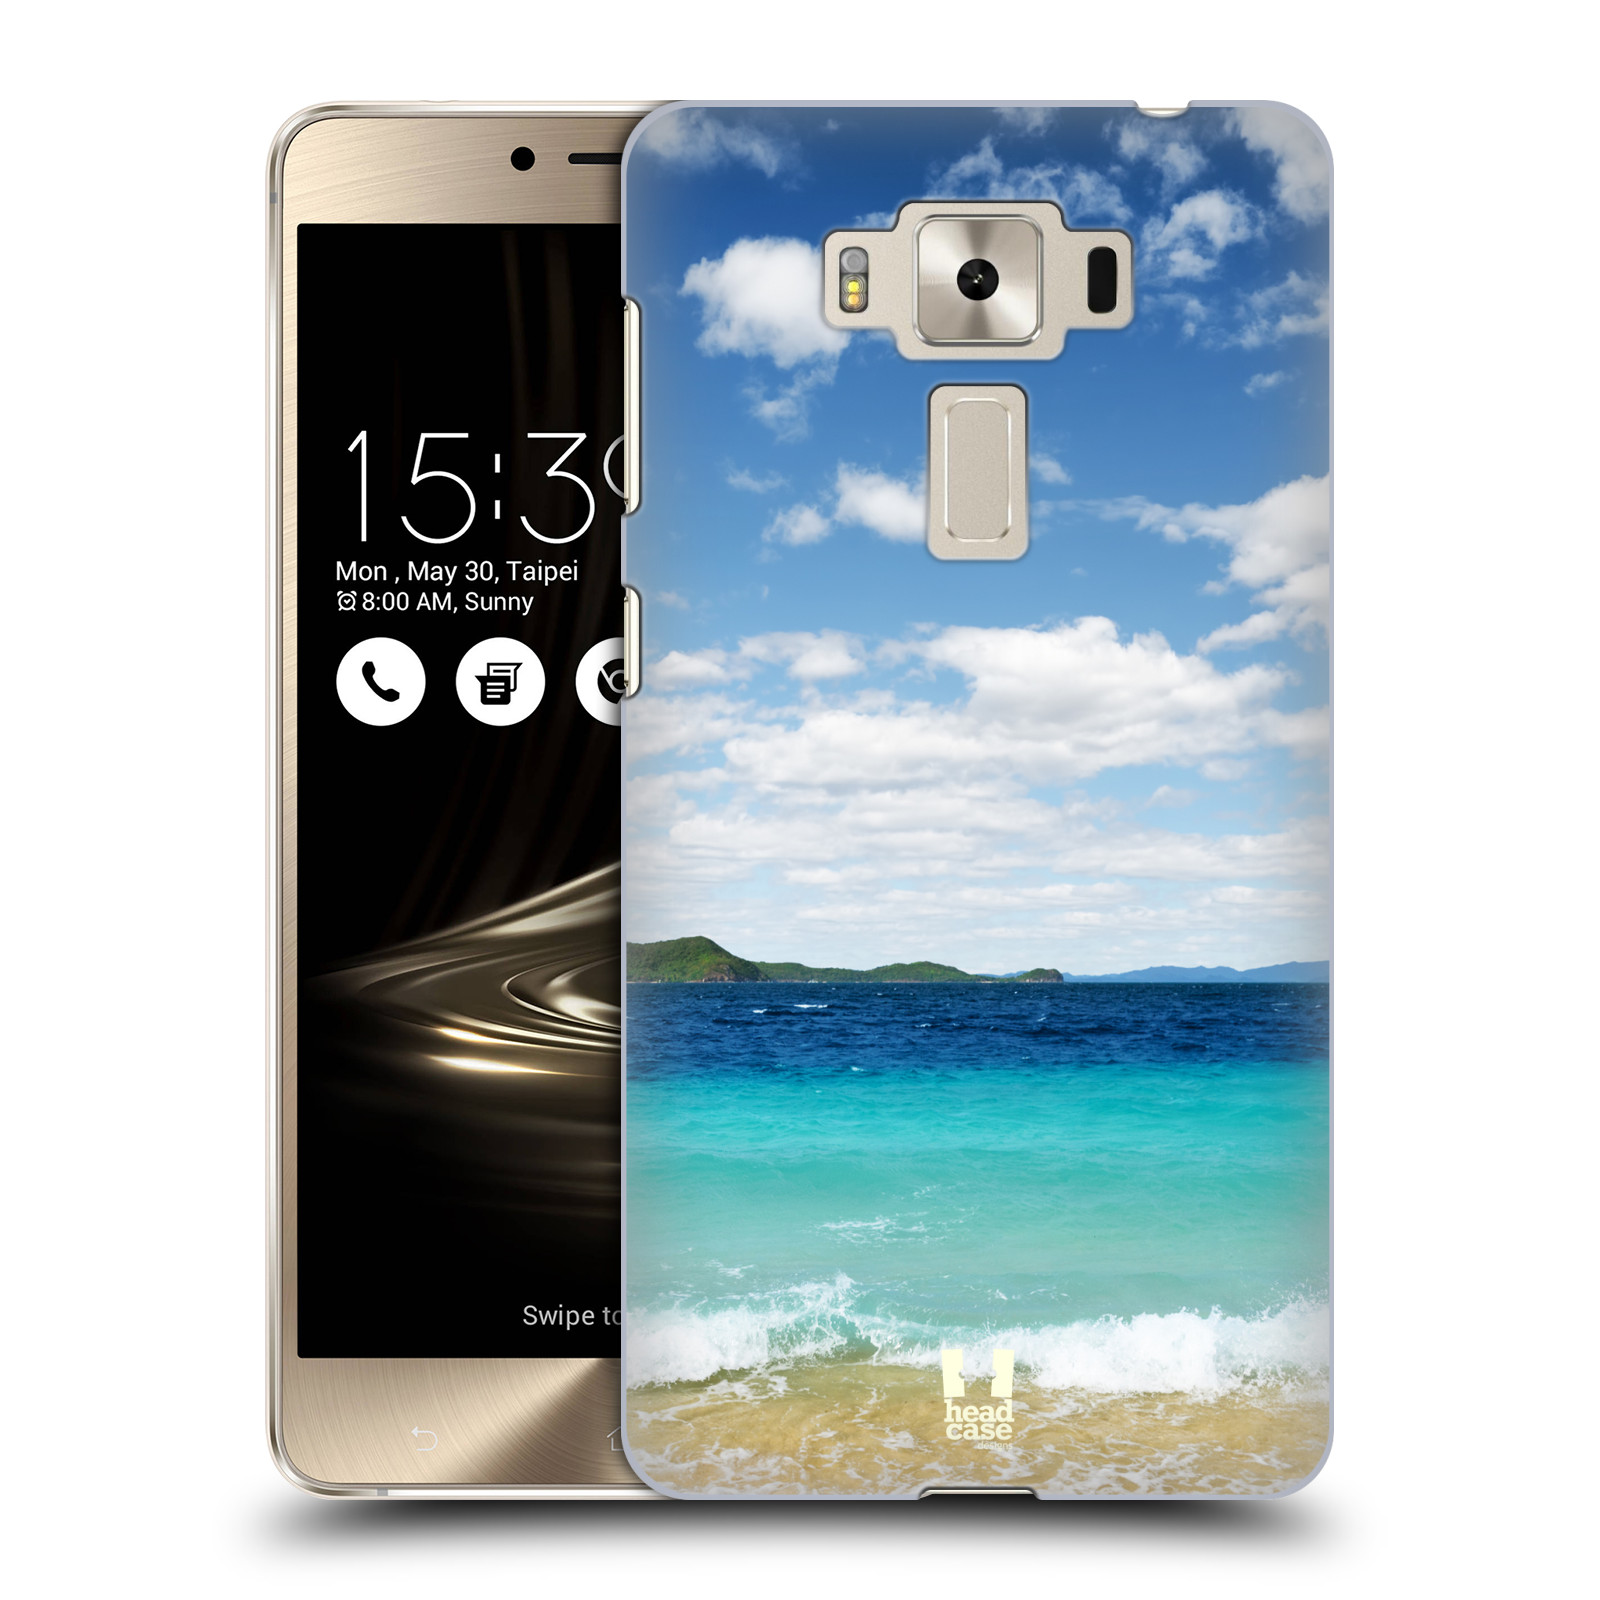 HEAD CASE plastový obal na mobil Asus Zenfone 3 DELUXE ZS550KL vzor Pláže a Moře VZDÁLENÝ OSTROV